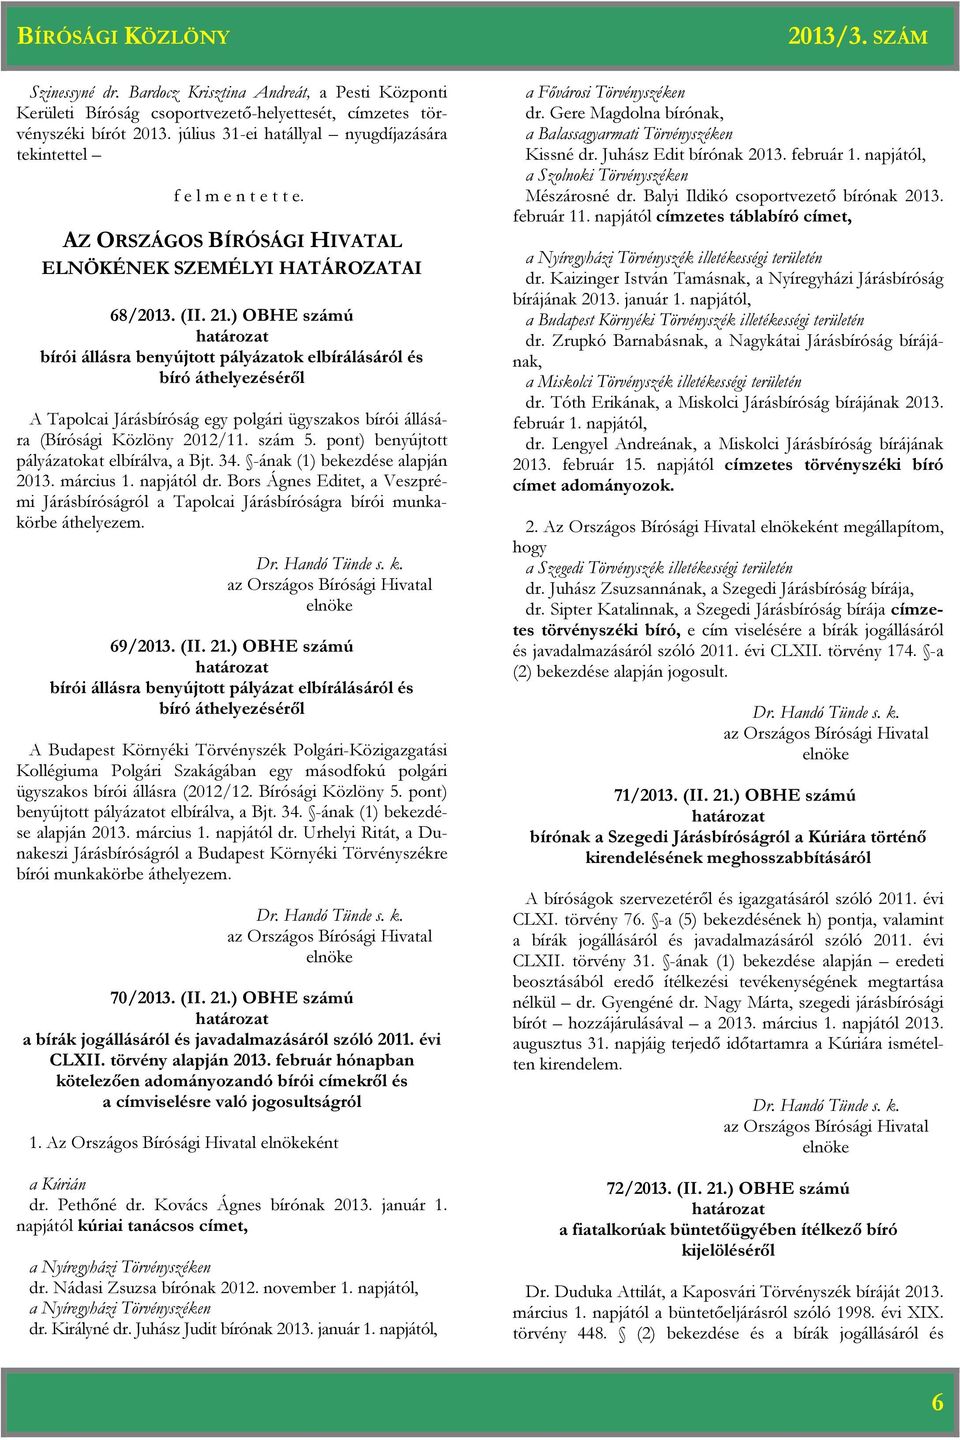 ) OBHE számú bírói állásra benyújtott pályázatok elbírálásáról és bíró áthelyezéséről A Tapolcai Járásbíróság egy polgári ügyszakos bírói állására (Bírósági Közlöny 2012/11. szám 5.